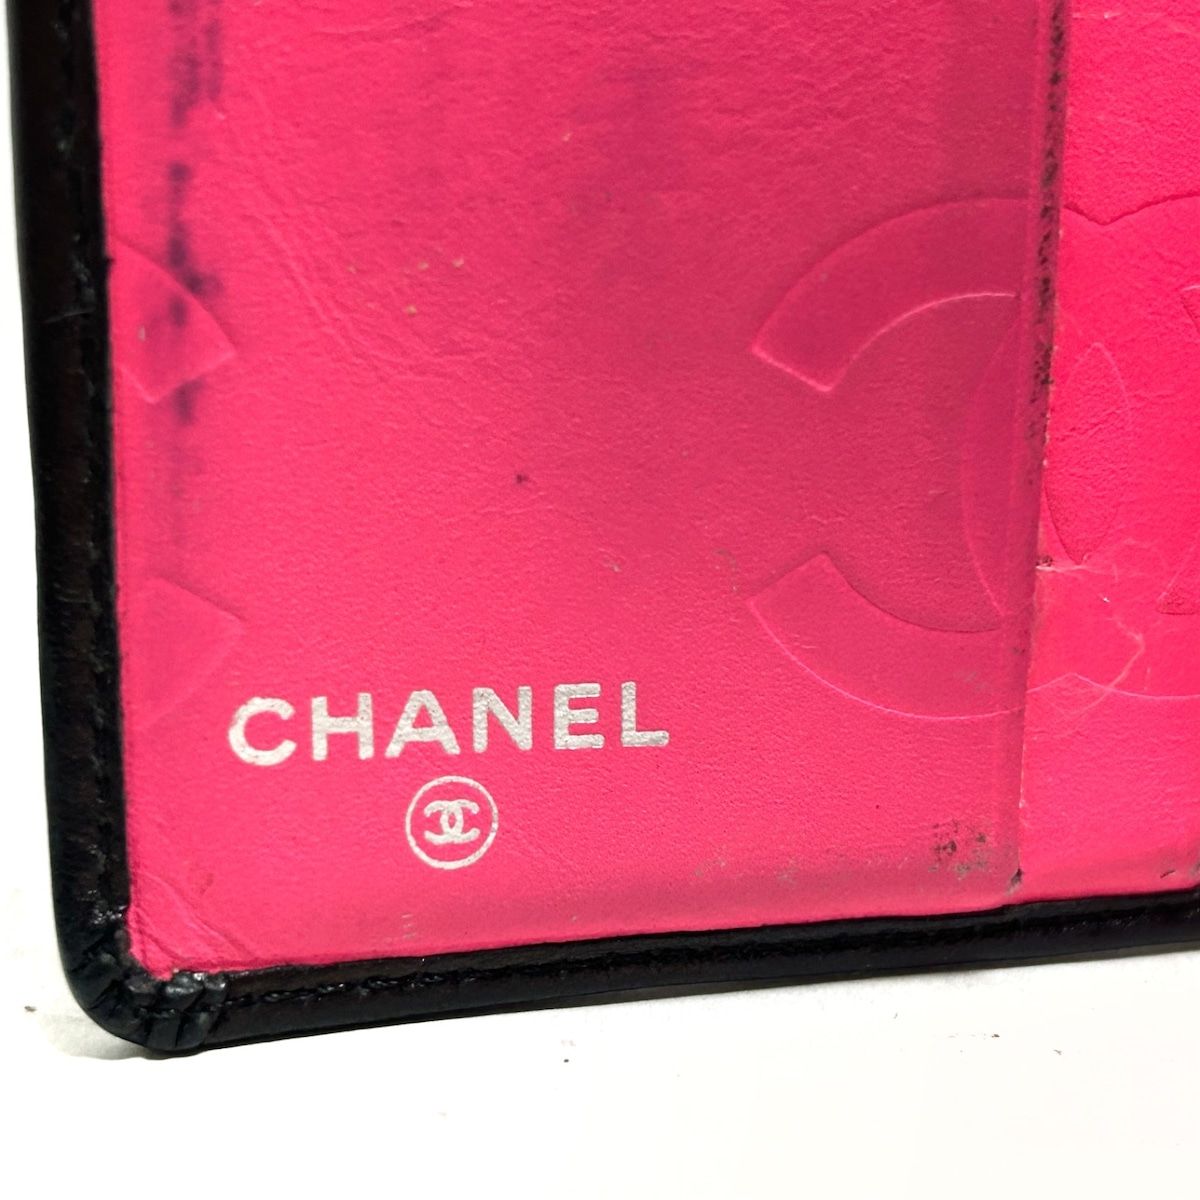 CHANEL(シャネル) 2つ折り財布 カンボンライン 黒×白 がま口 ラムスキン